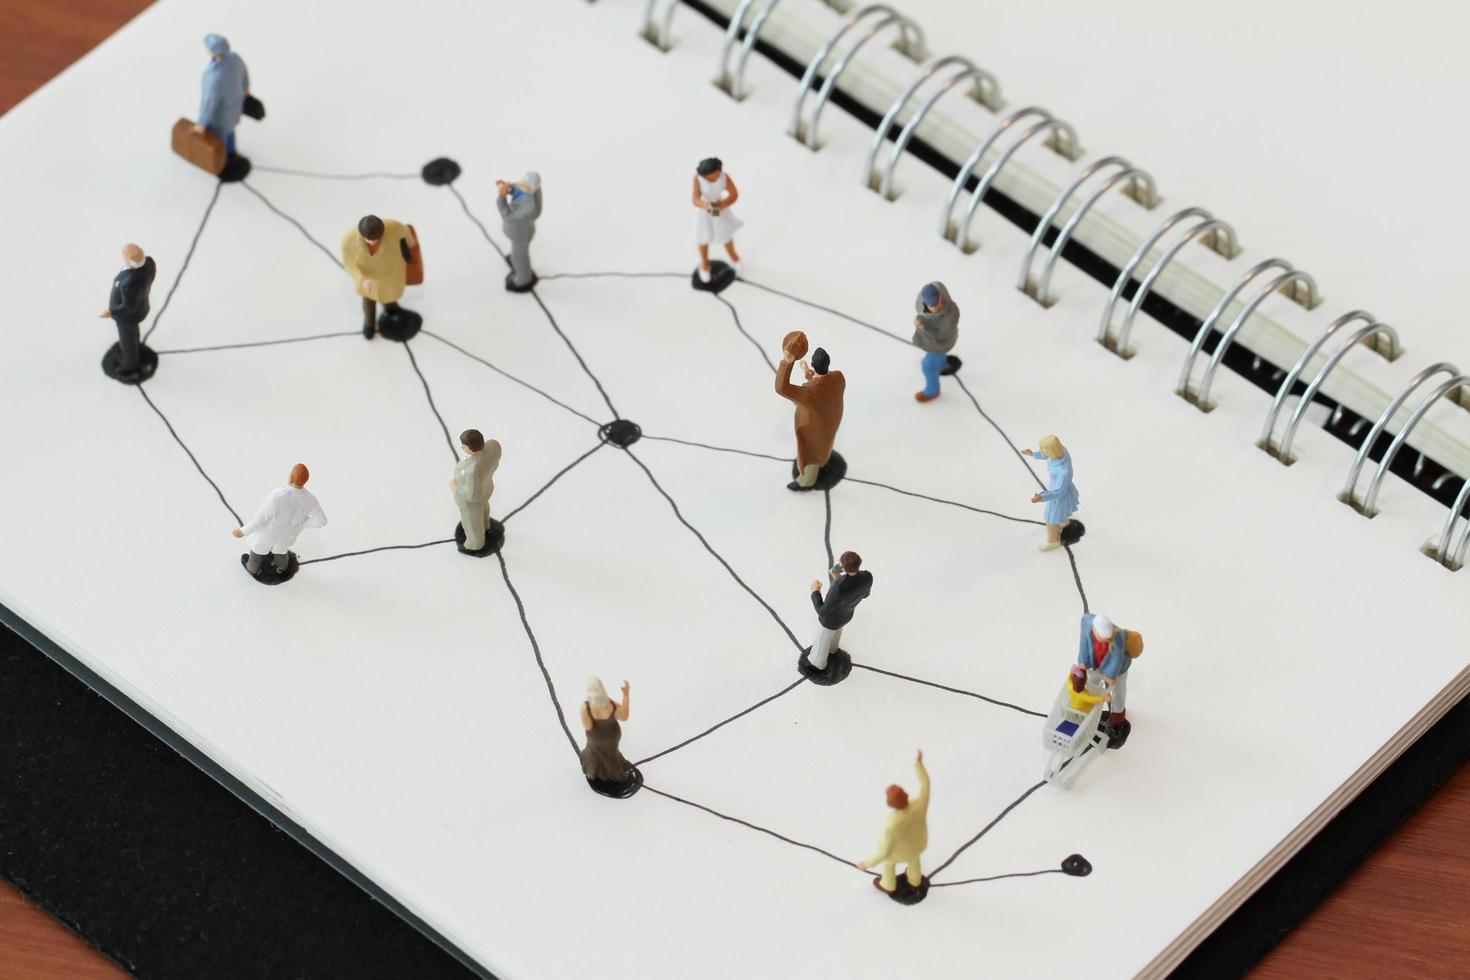 primer plano de personas en miniatura con diagrama de red social en un cuaderno abierto en un escritorio de madera como concepto de medios sociales foto